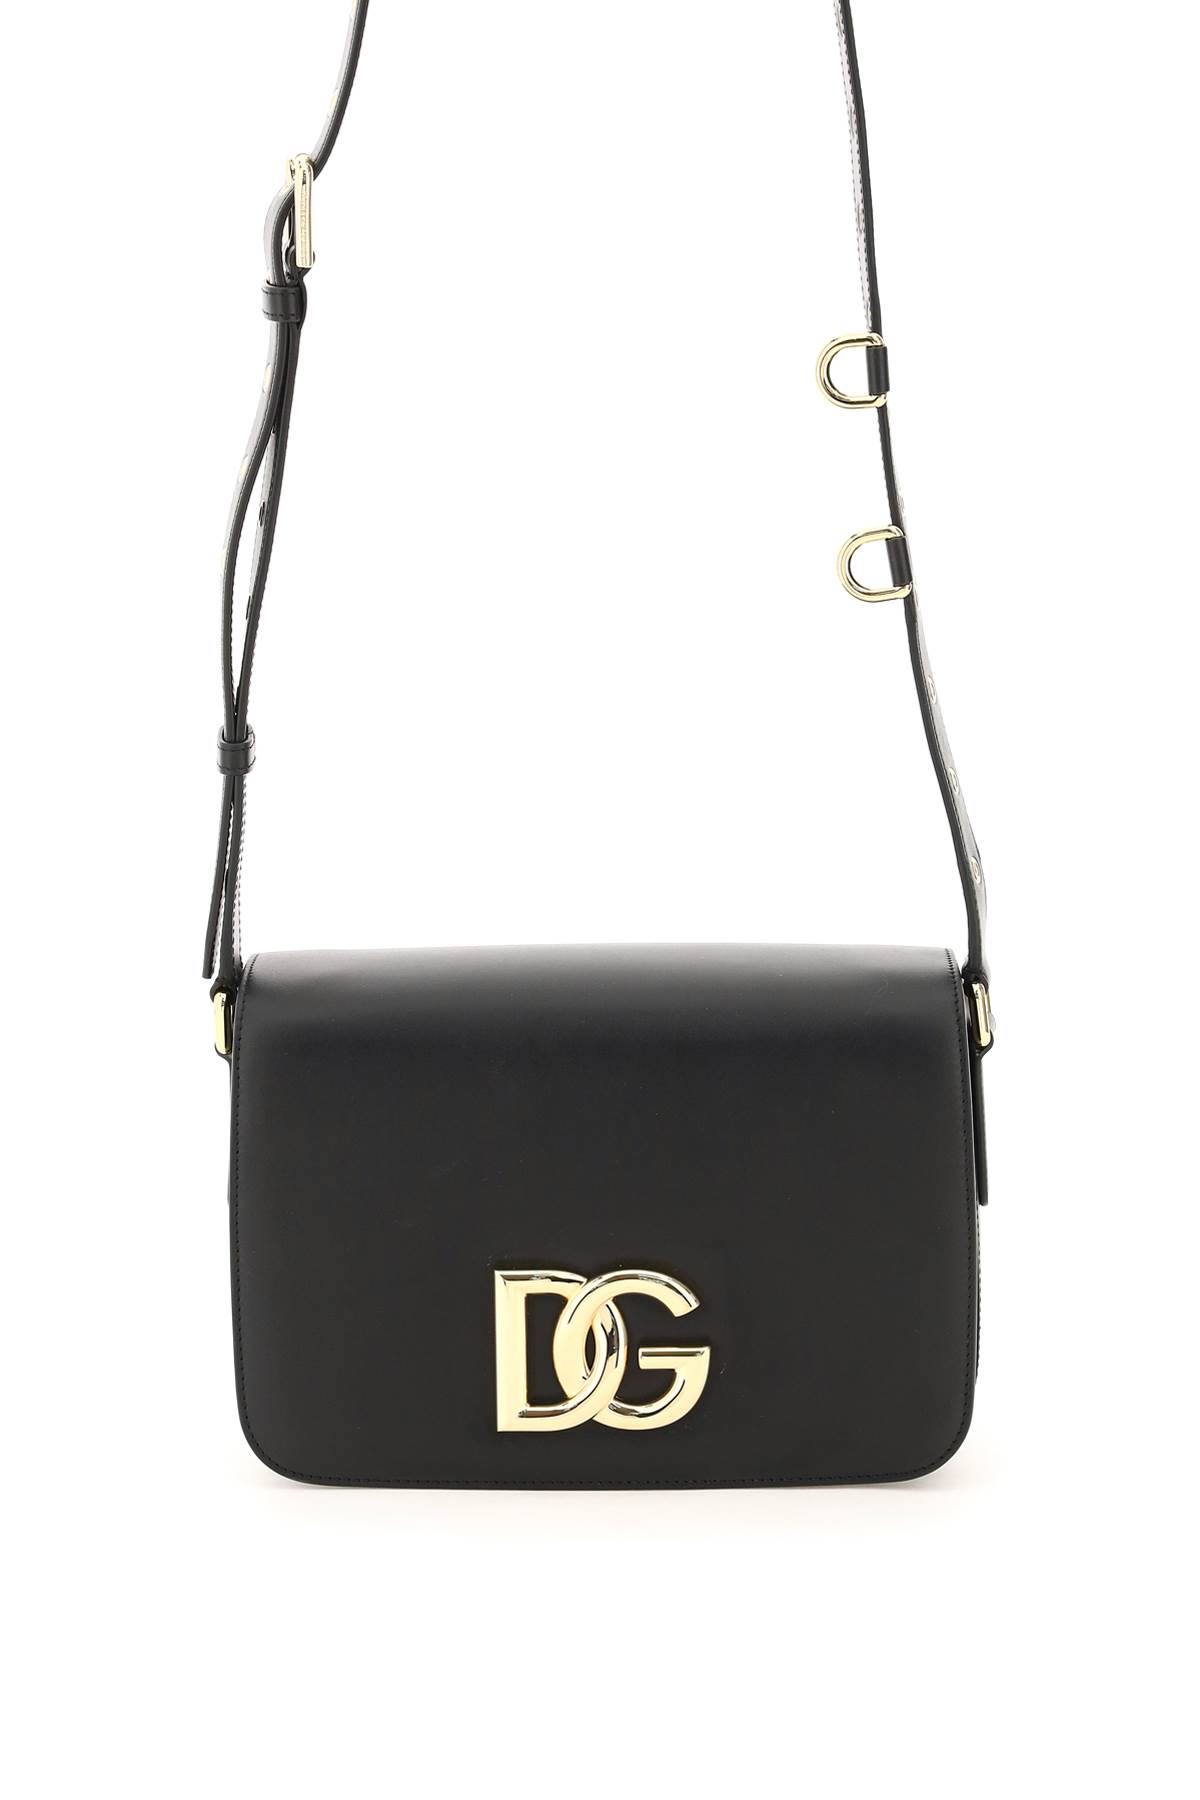 Dolce & Gabbana 3.5 Leather Bag